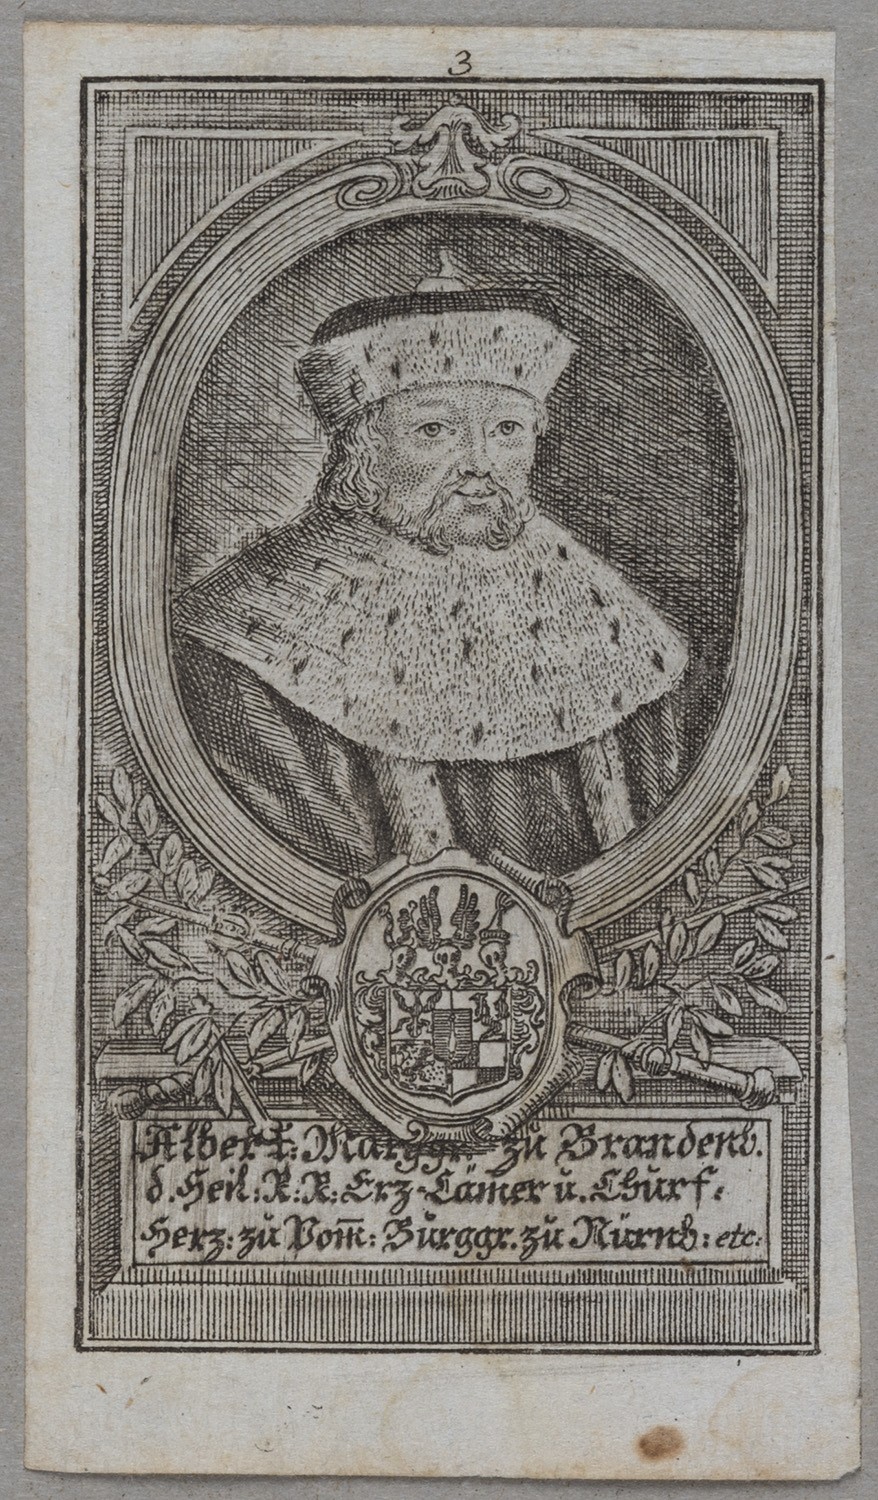 Albrecht "Achilles", Kurfürst von Brandenburg (1414-1486, reg. 1440-1486) (Landesgeschichtliche Vereinigung für die Mark Brandenburg e.V., Archiv CC BY)